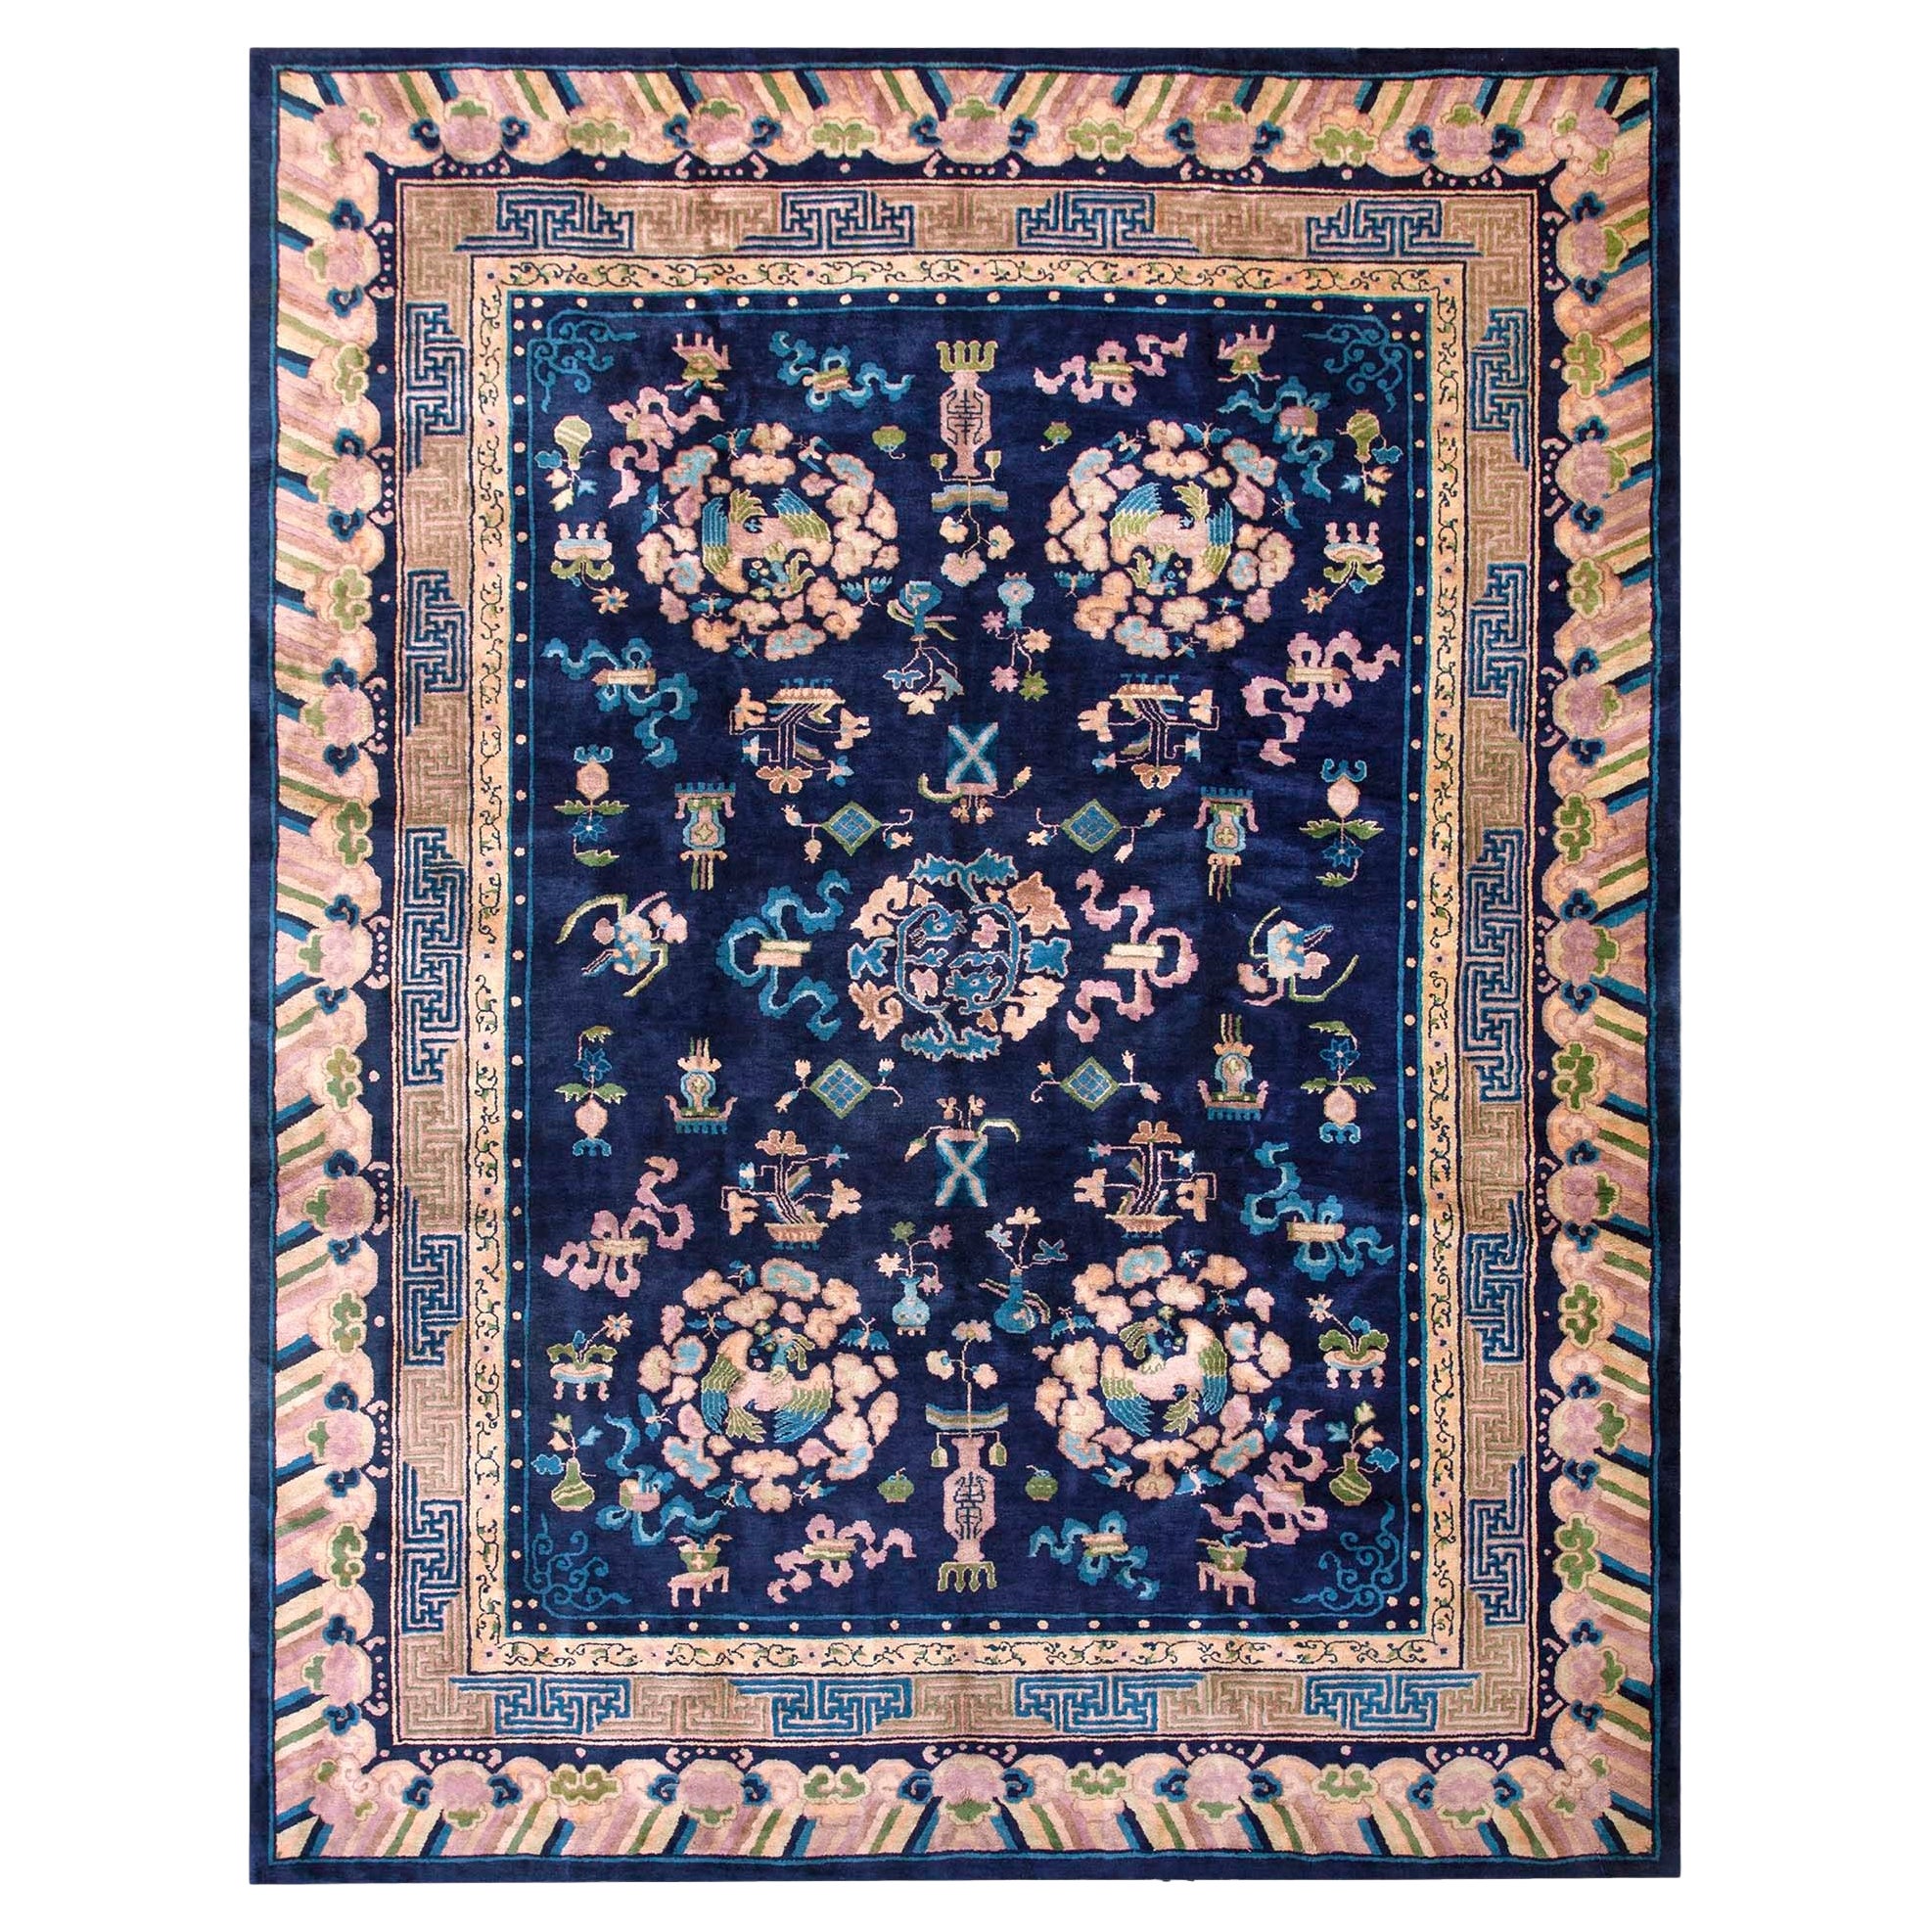 Chinesischer Pekinger Teppich des frühen 20. Jahrhunderts ( 9' x 11'10" - 275 x 360)